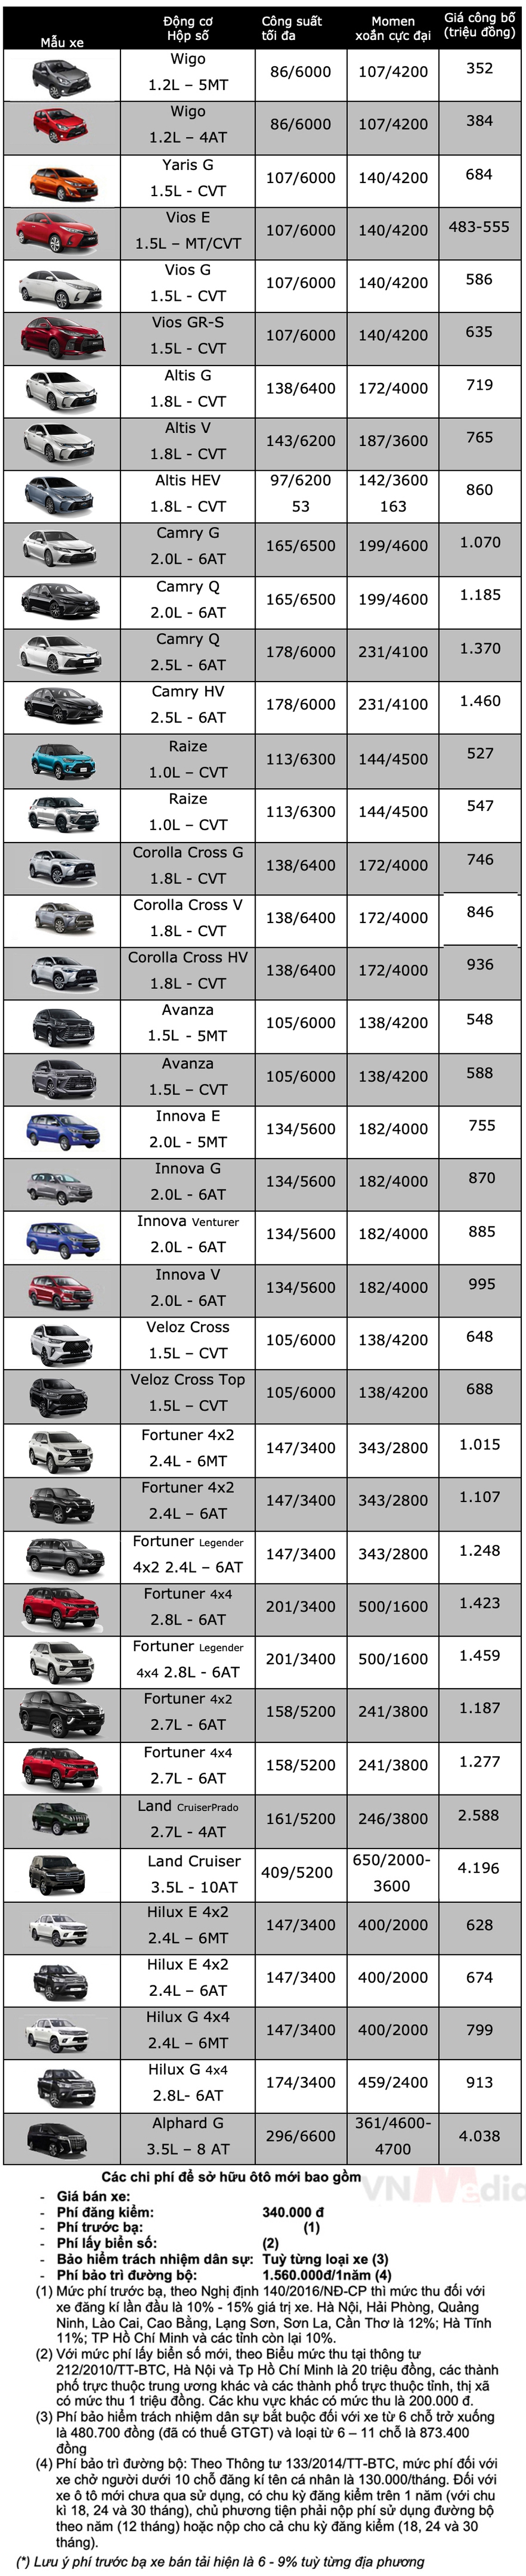 Bảng giá xe Toyota tháng 2: Veloz Cross được giảm 50 triệu đồng - Ảnh 2.